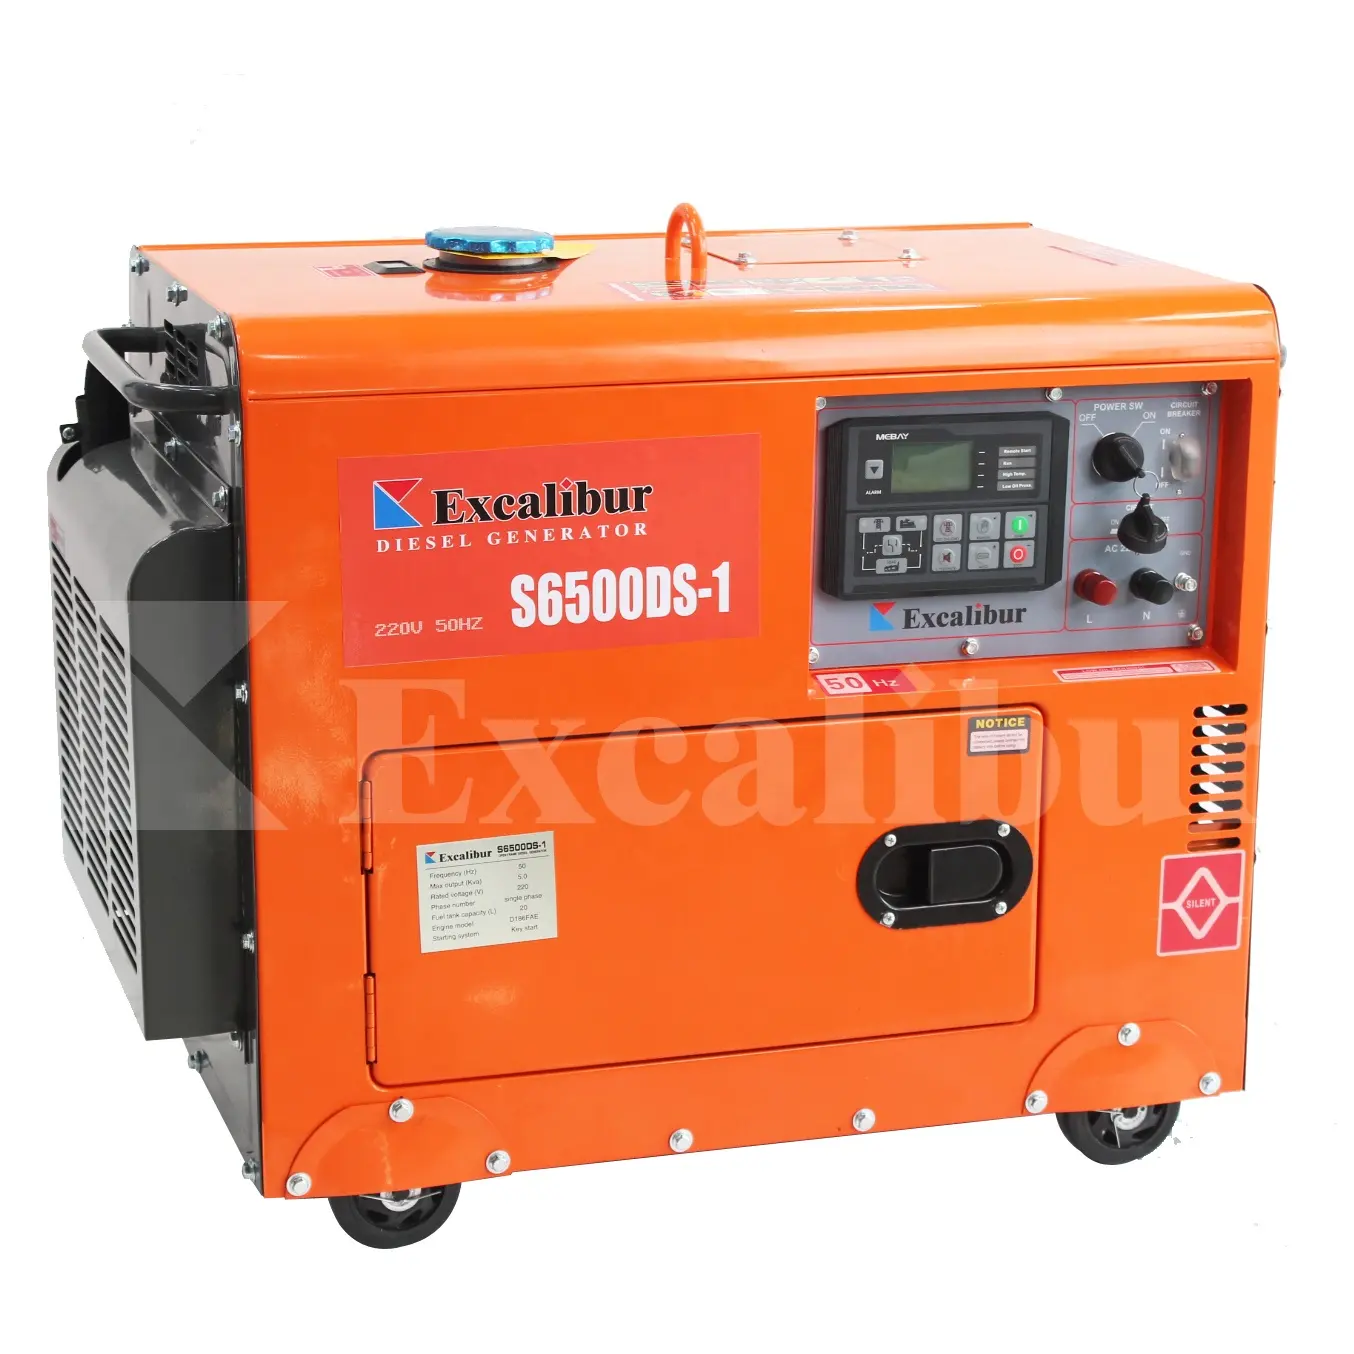 3kw 5kw 6kw 7kw 8kw Generator Diesel elektro statischer Generator Preis tragbar Silent elektrische Diesel generatoren